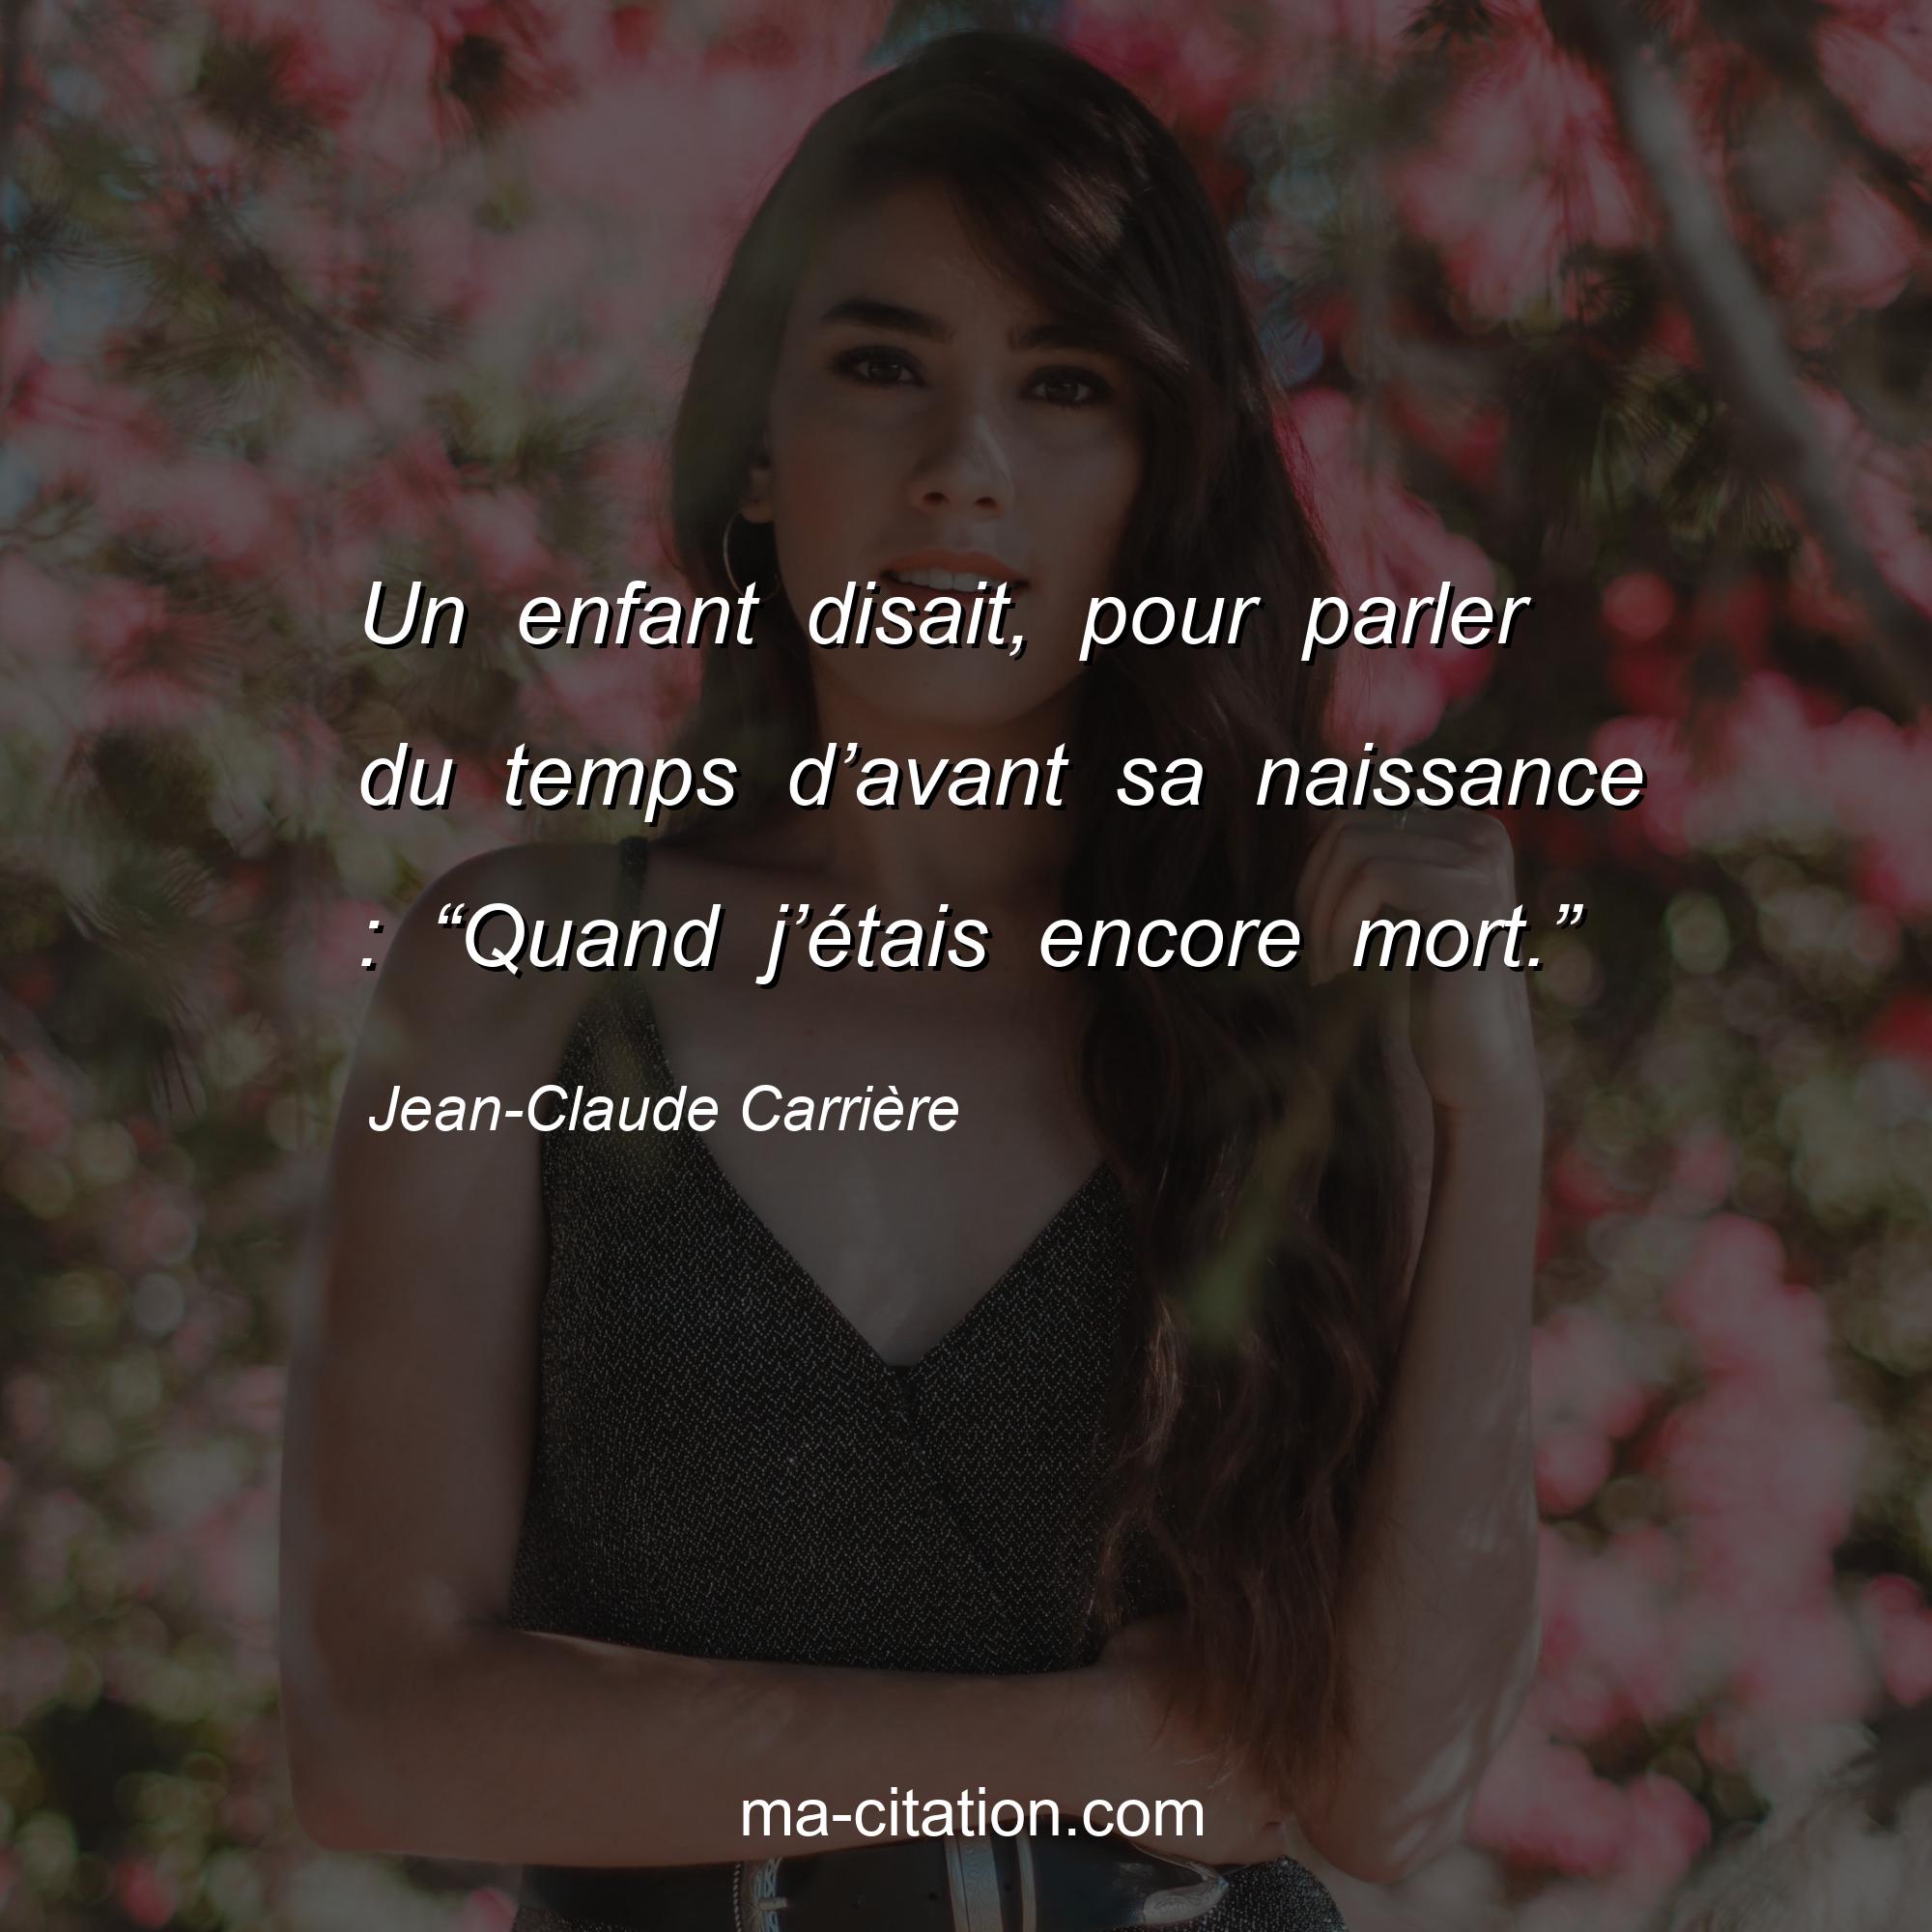 Jean-Claude Carrière : Un enfant disait, pour parler du temps d’avant sa naissance : “Quand j’étais encore mort.”